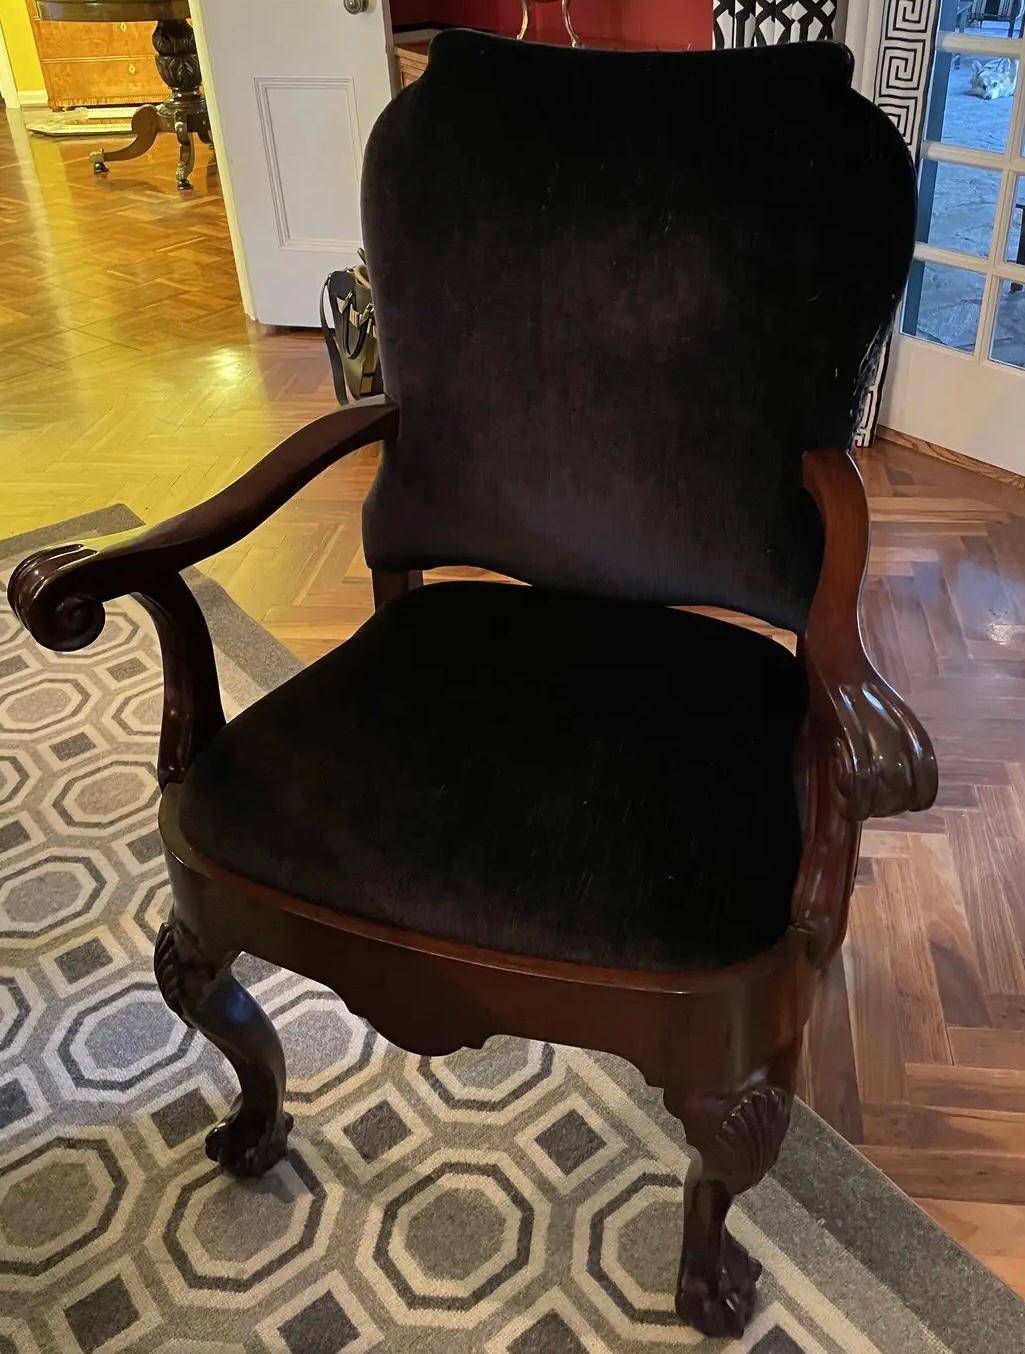 Satz von 12 Mary McDonald's Chippendale Stil Mahagoni & Schwarz Mohair Esszimmerstühle. Dies sind die Stühle, die in Mary McDonald's Buch Interiors abgebildet sind. Das Set umfasst 2 Sessel und 10 Beistellstühle.